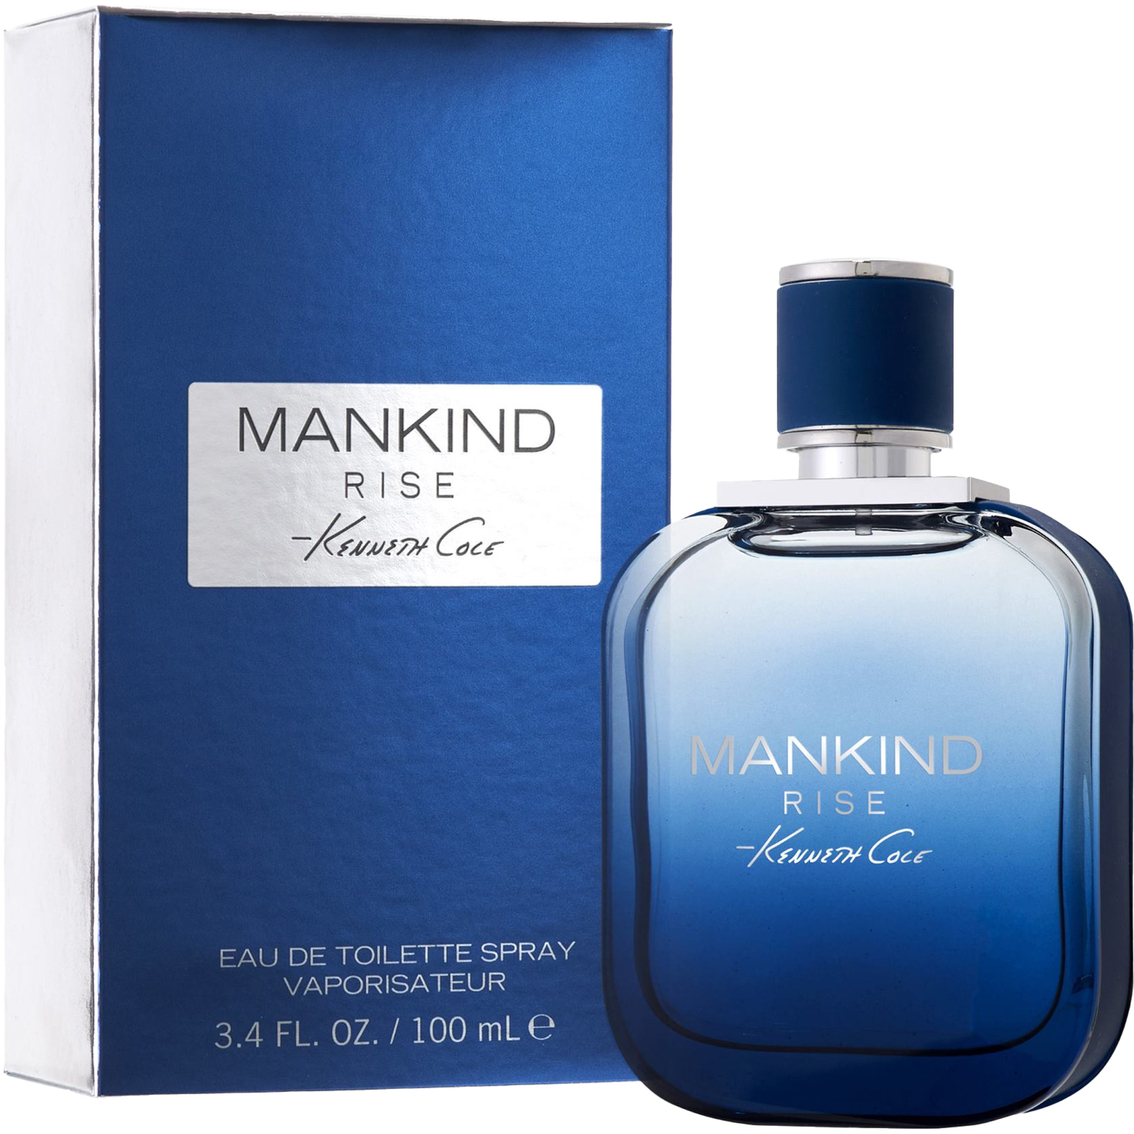 Kenneth Cole Mankind Rise Eau De Toilette 3.4 Oz. | Fragrances | Beauty ...